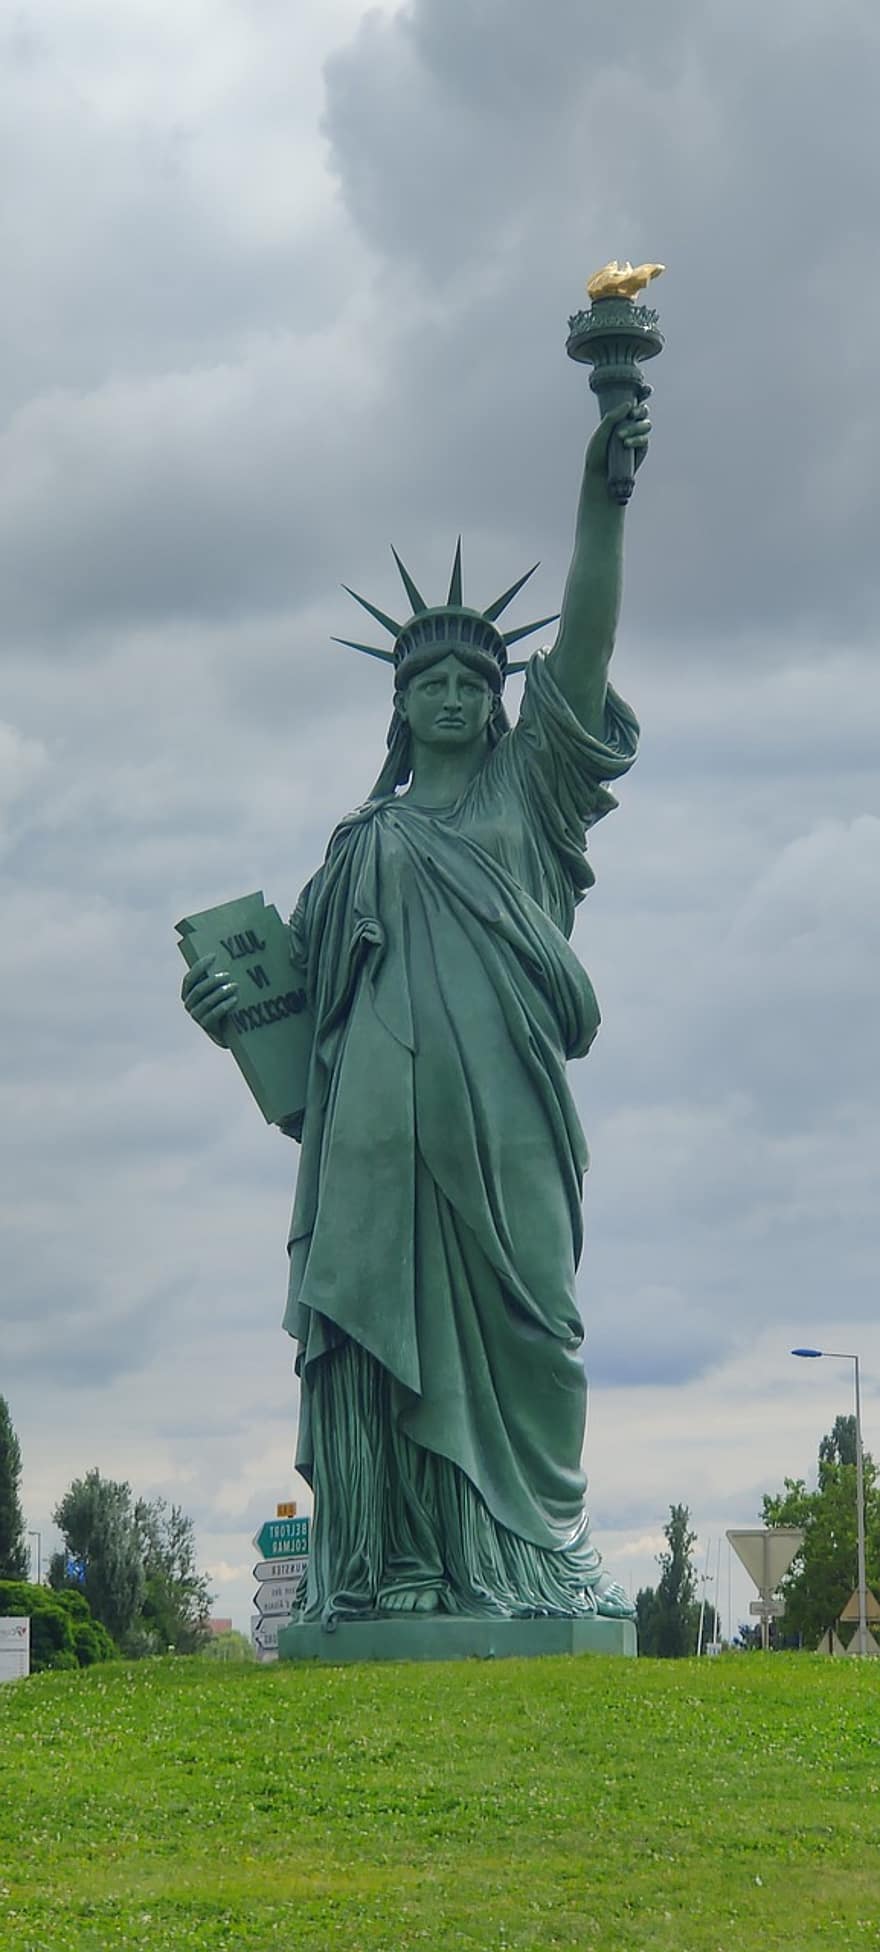 Колмар, статуя на свободата, статуя, реплика, свобода, трева, поле, скулптура, парк, туристическа атракция